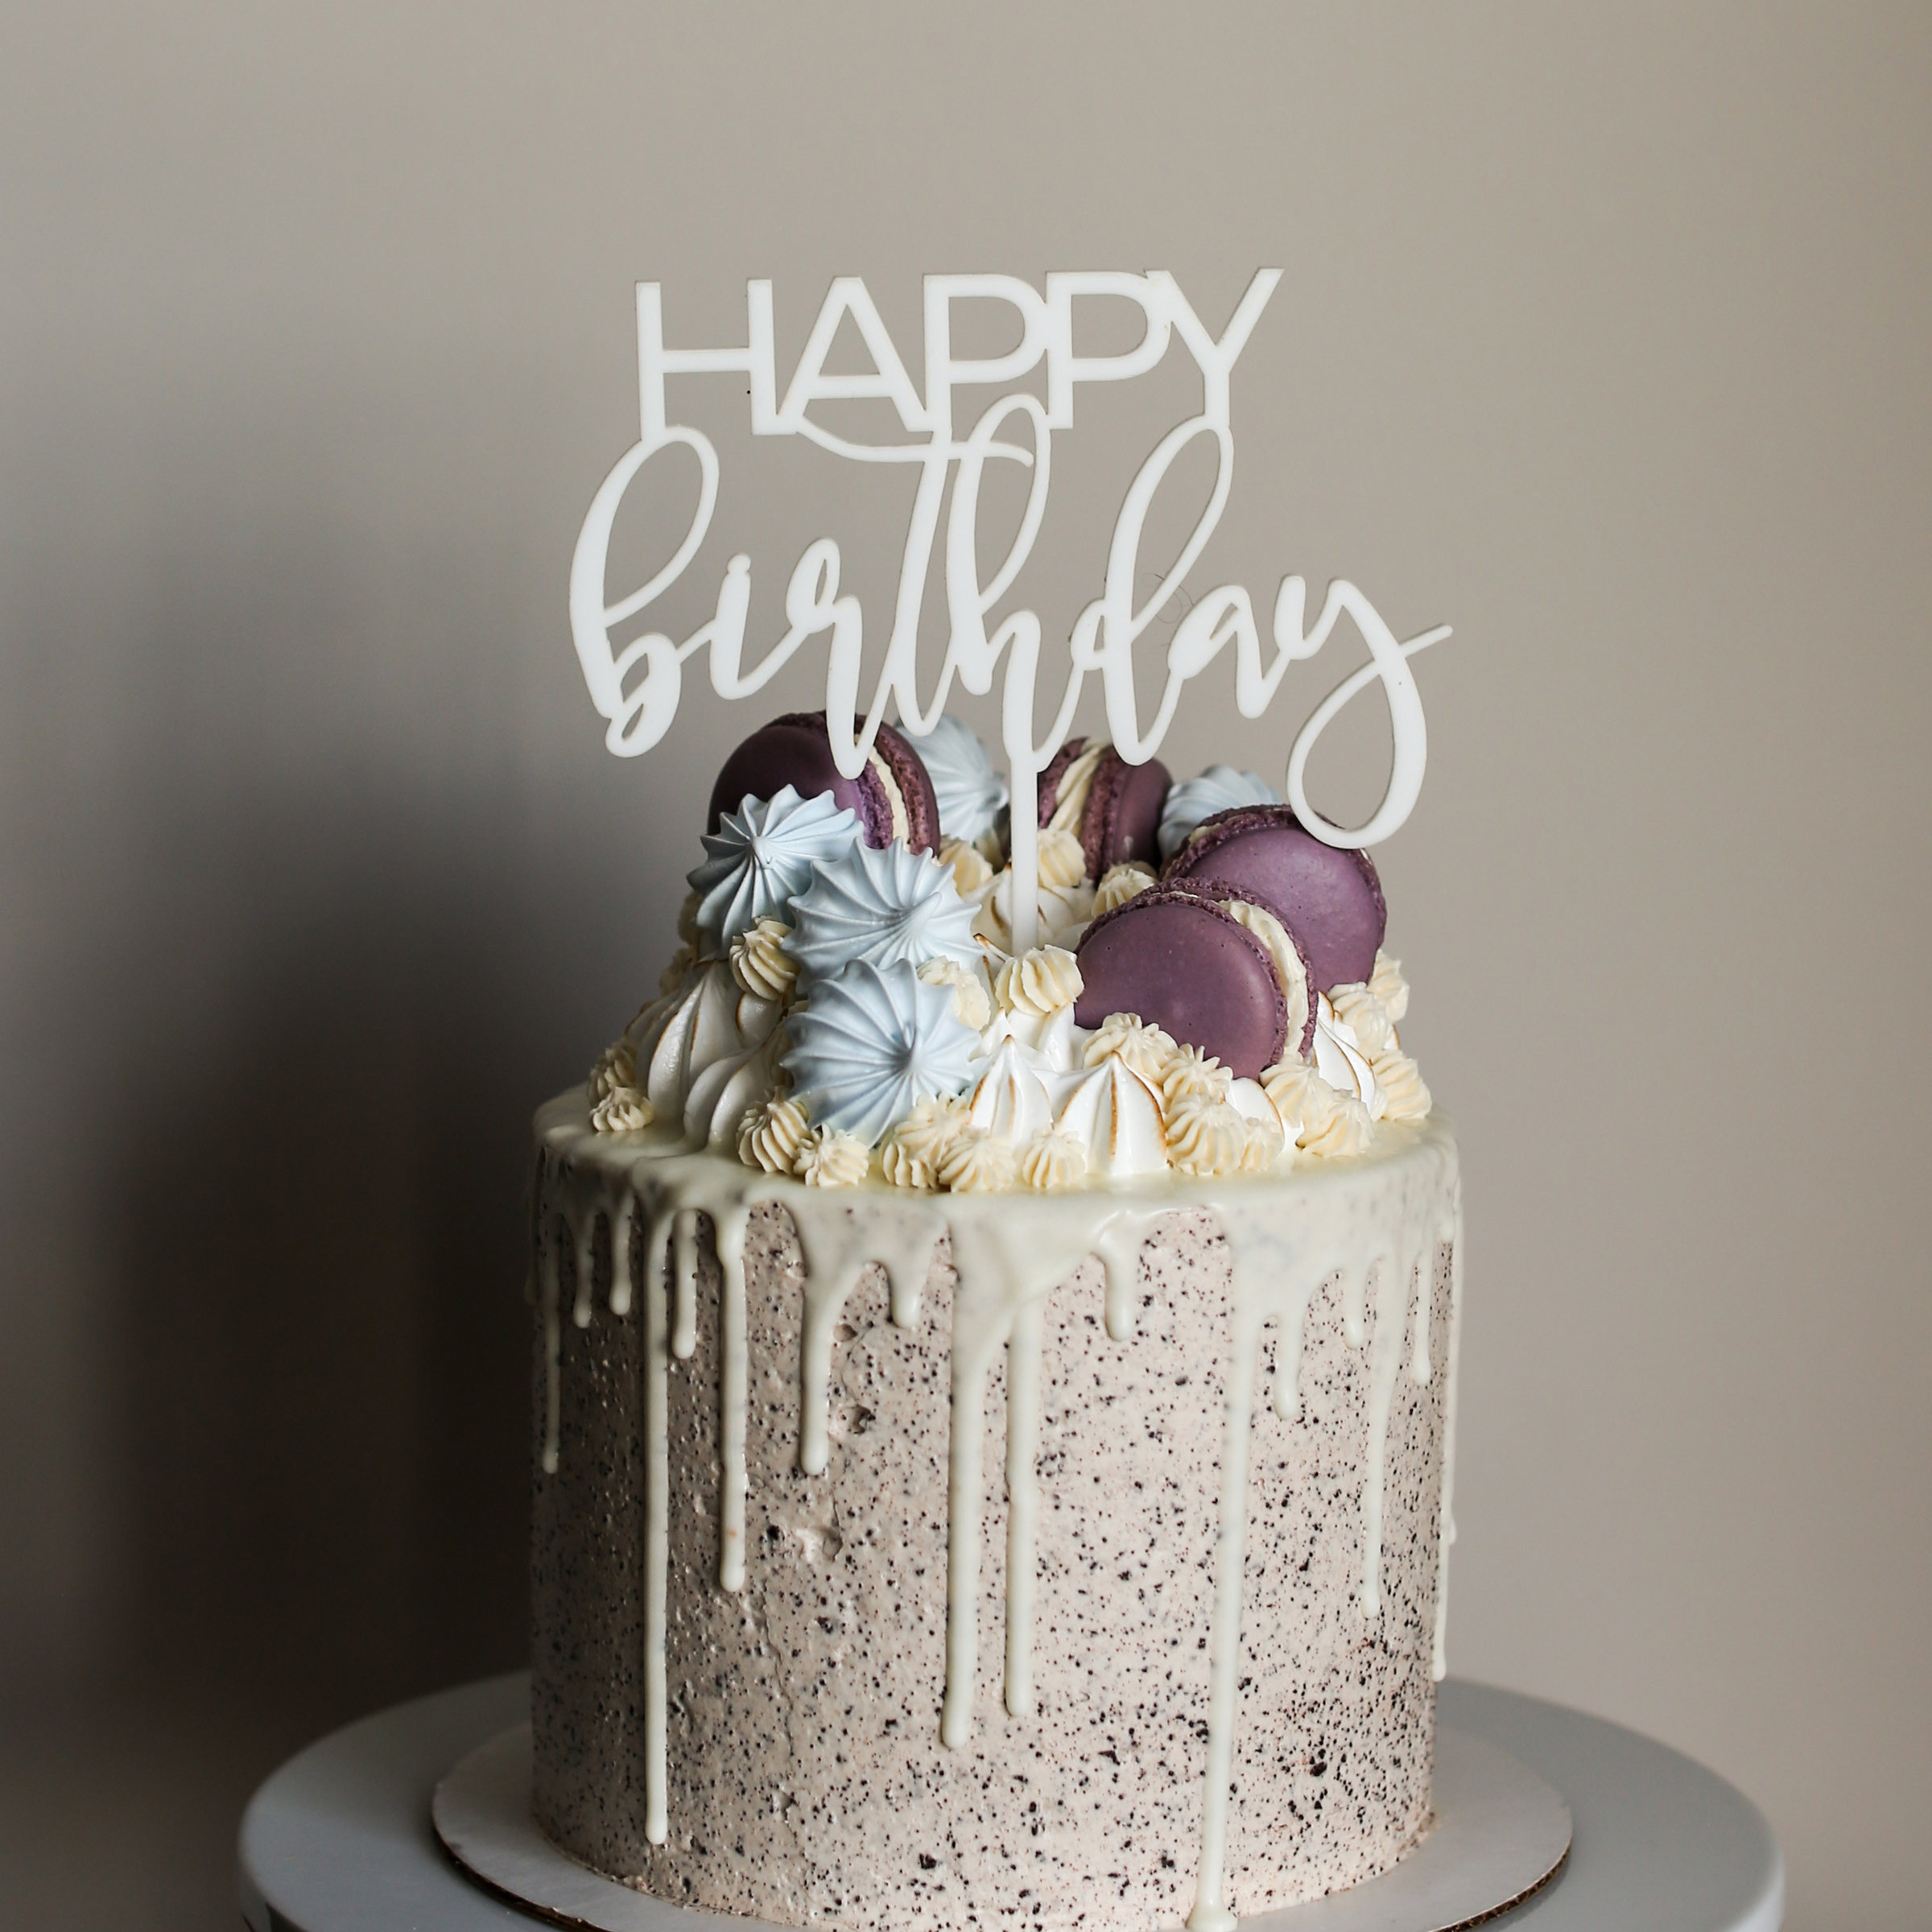 Happy Birthday Cakes Images
 Happy Birthday Cake Topper – Love Plus Design